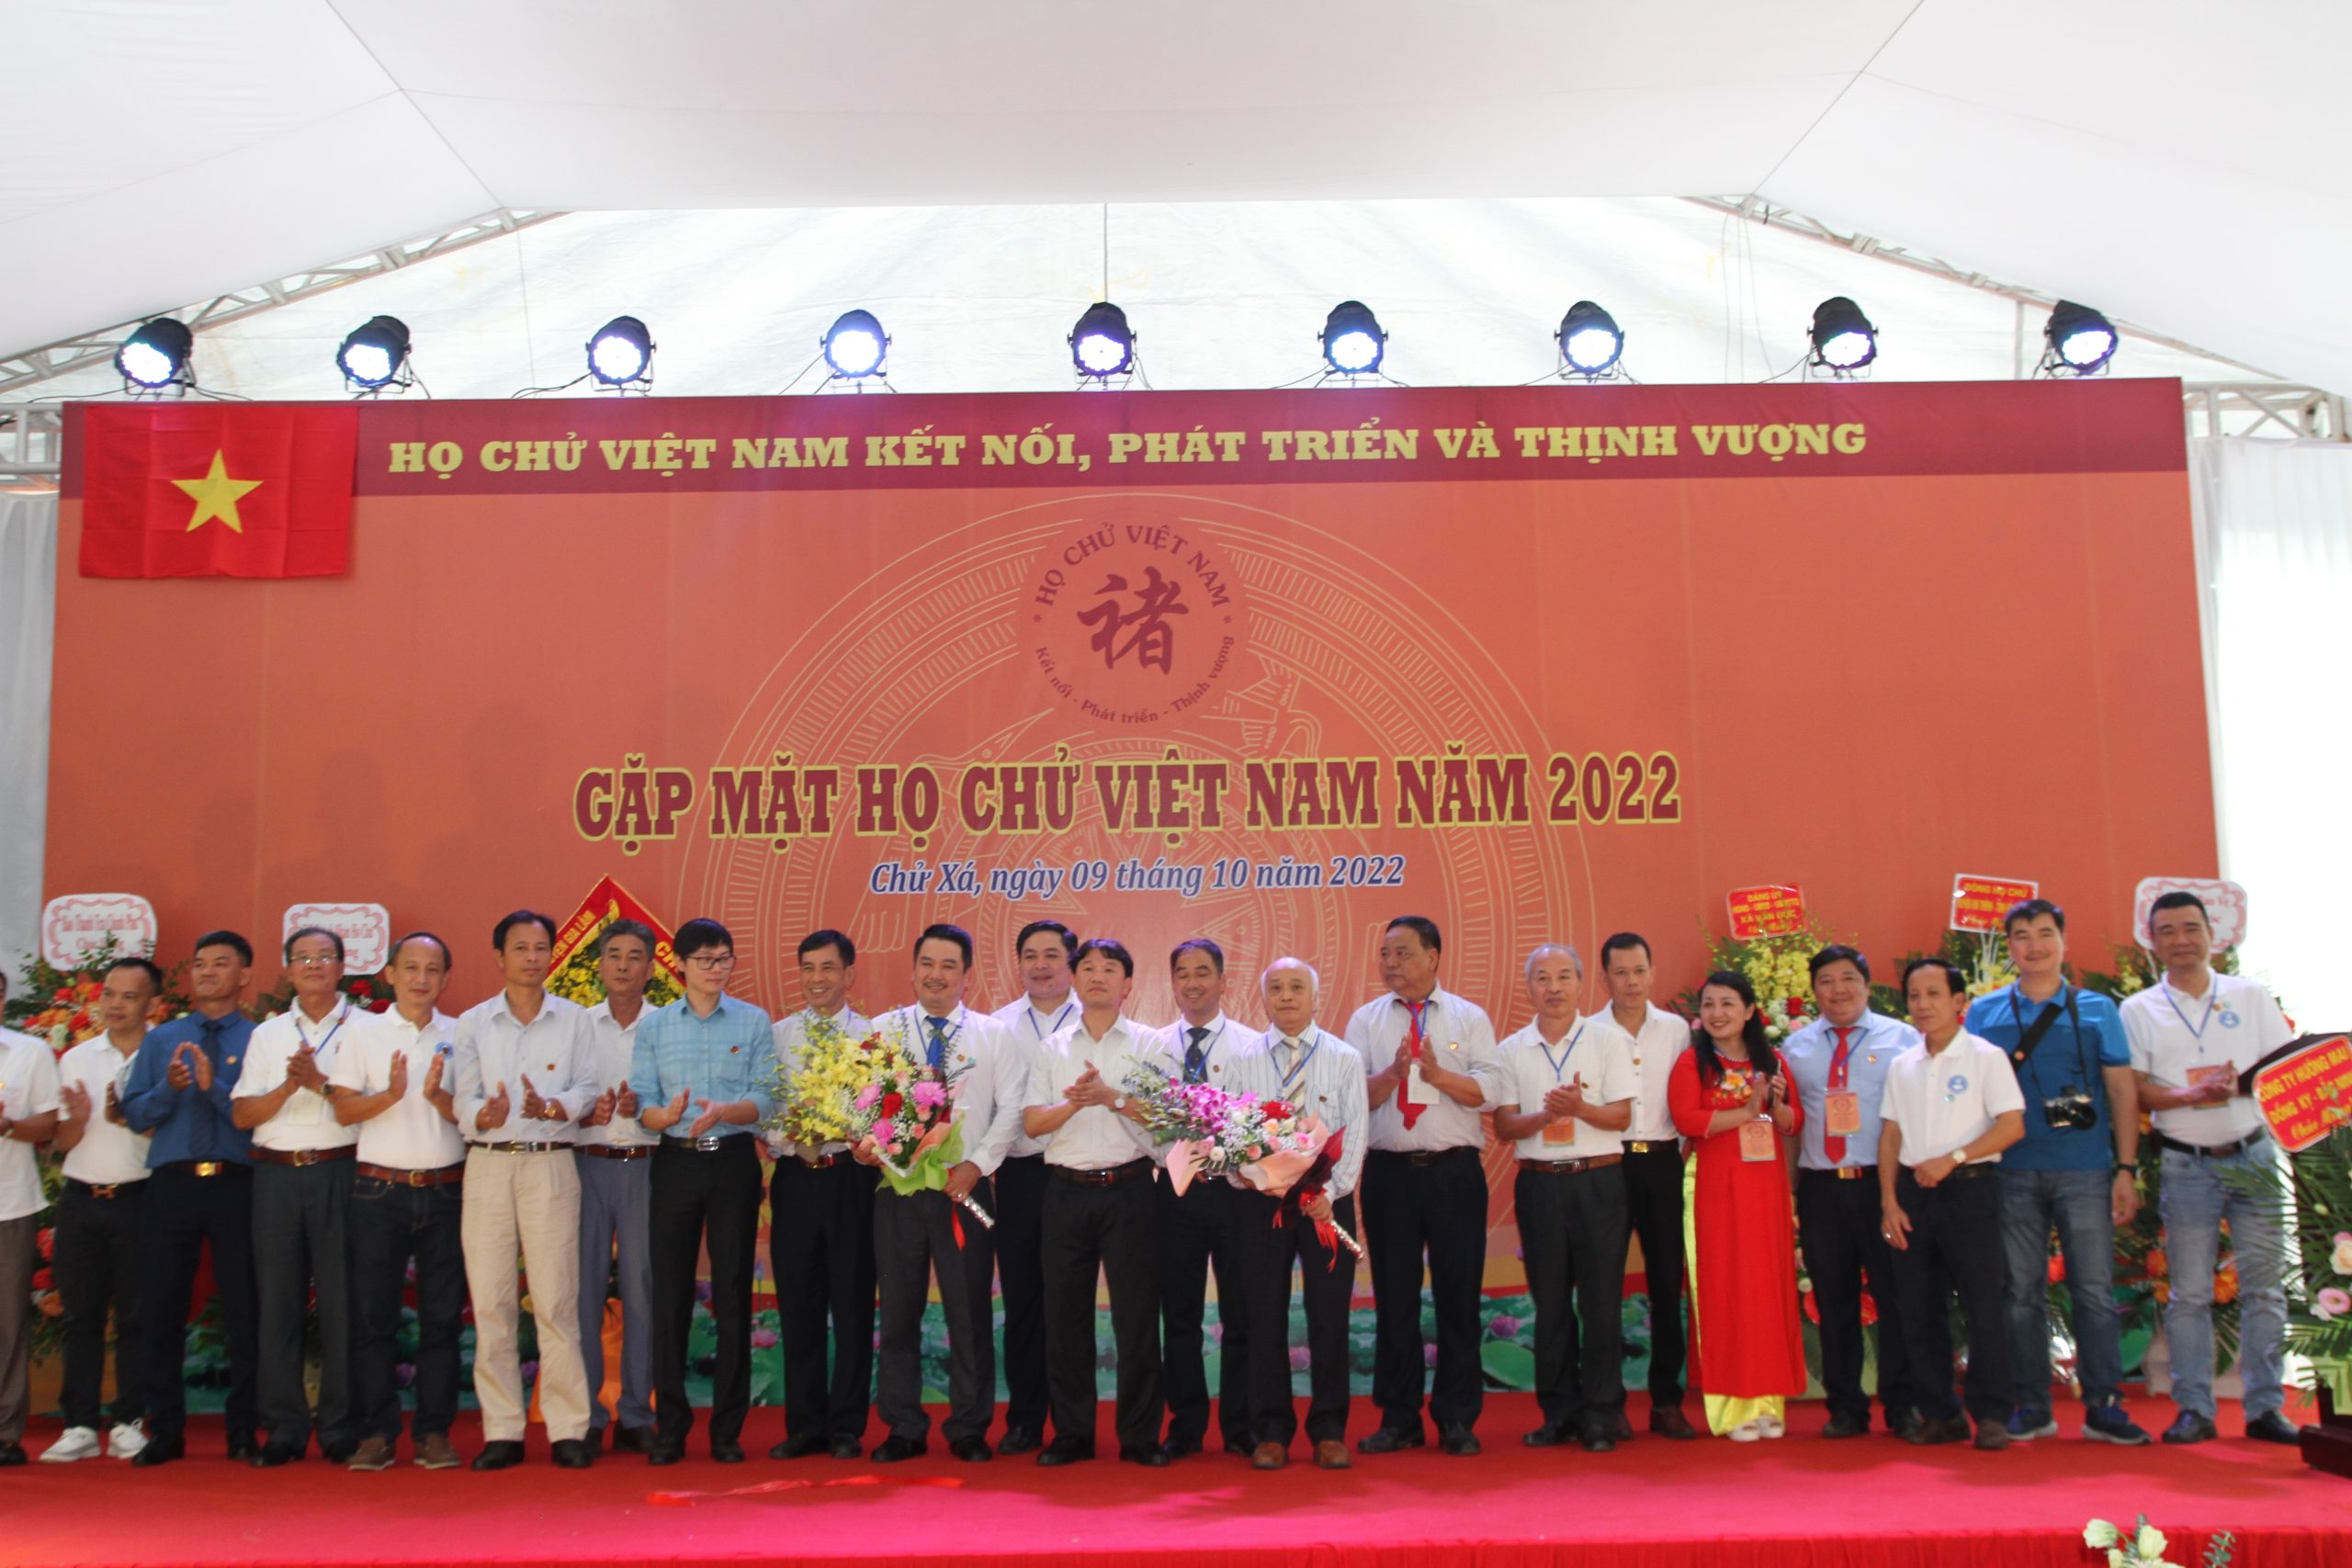 Lãnh đạo huyện Gia Lâm, TP. Hà Nội tặng hoa chúc mừng Ban liên lạc họ Chử Việt Nam